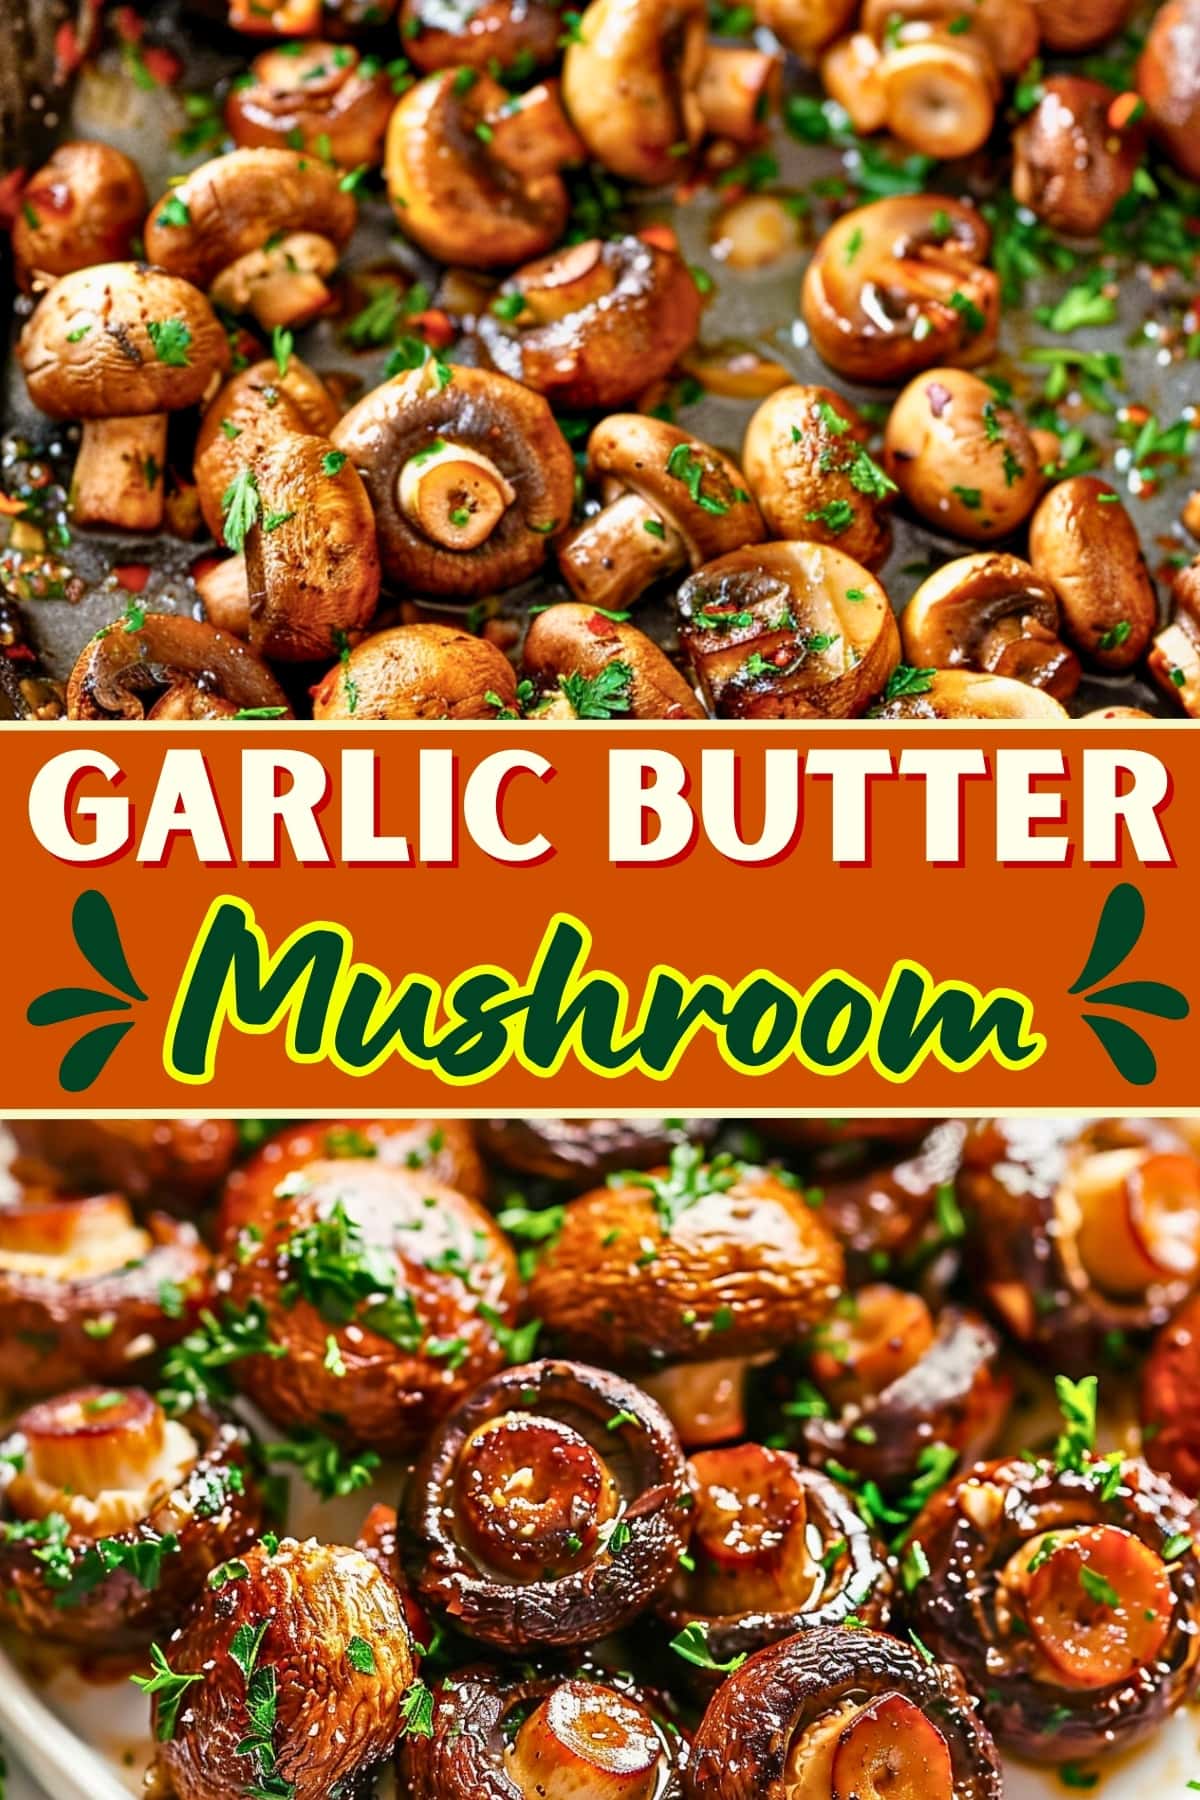 Garlic Butter Mushrooms recipe